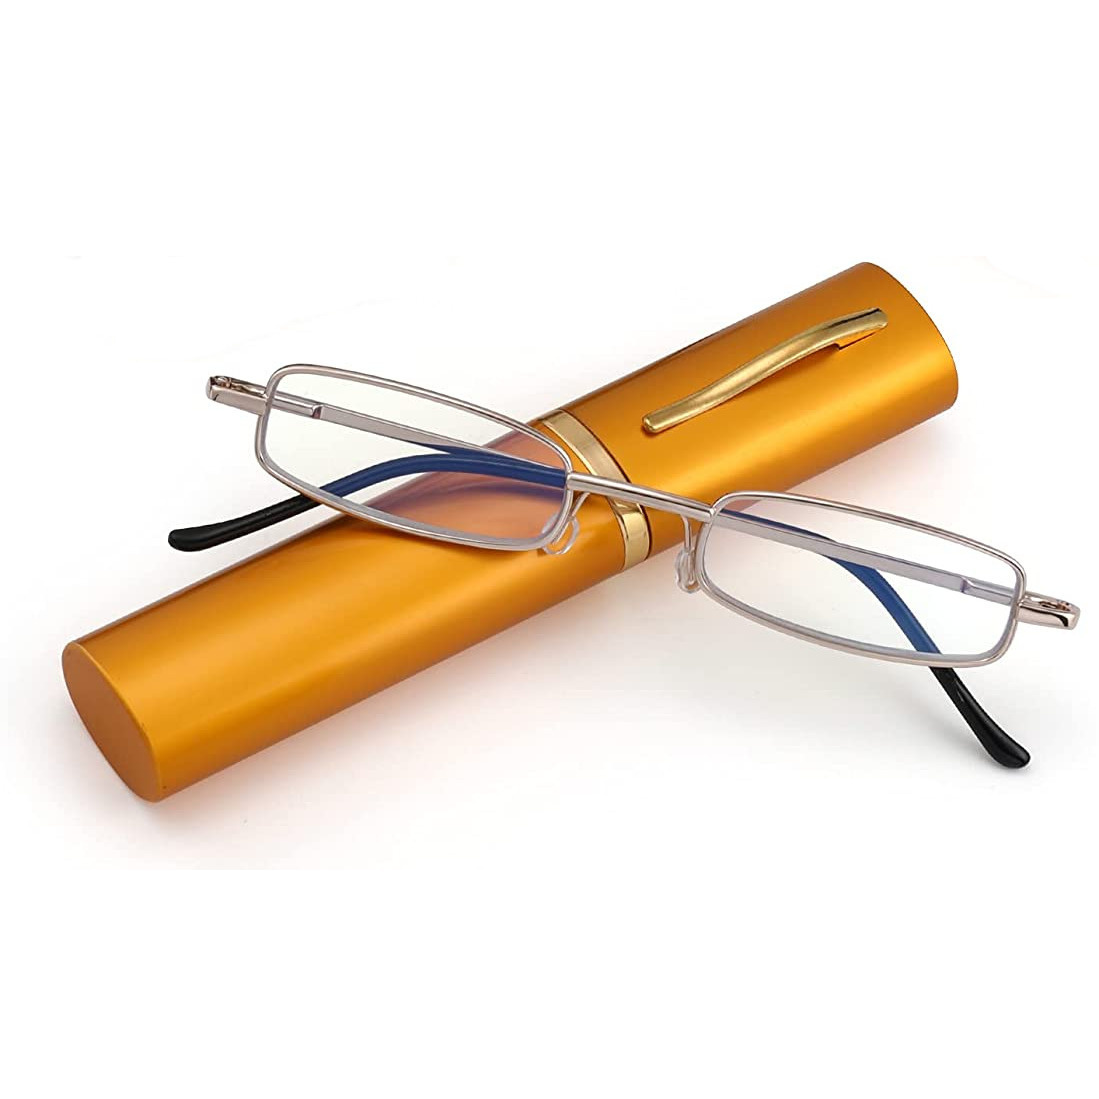 Ручки с футляром, Корригирующие очки Mien ручки для зрения с футляром +2, 25, унисекс  - купить